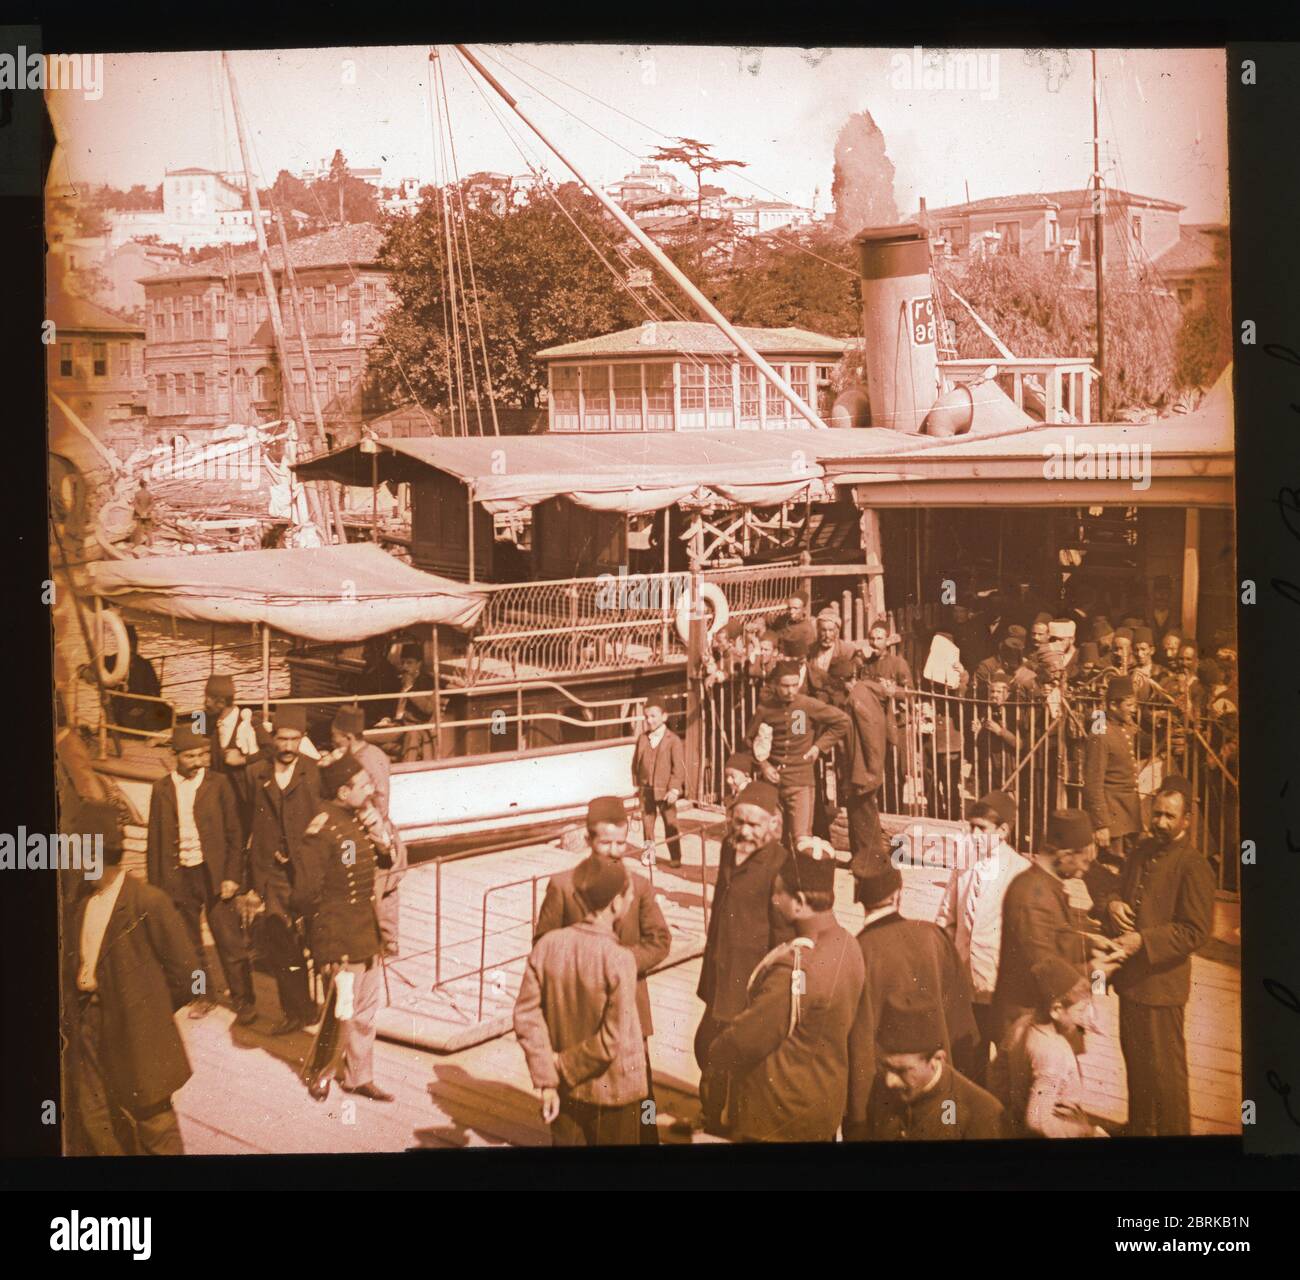 Istanbul Constantinople Pier au Bosporus Bechiktach. Photographie des environs de 1910 sur une plaque de verre sec de la collection Herry W. Schaefer. Banque D'Images